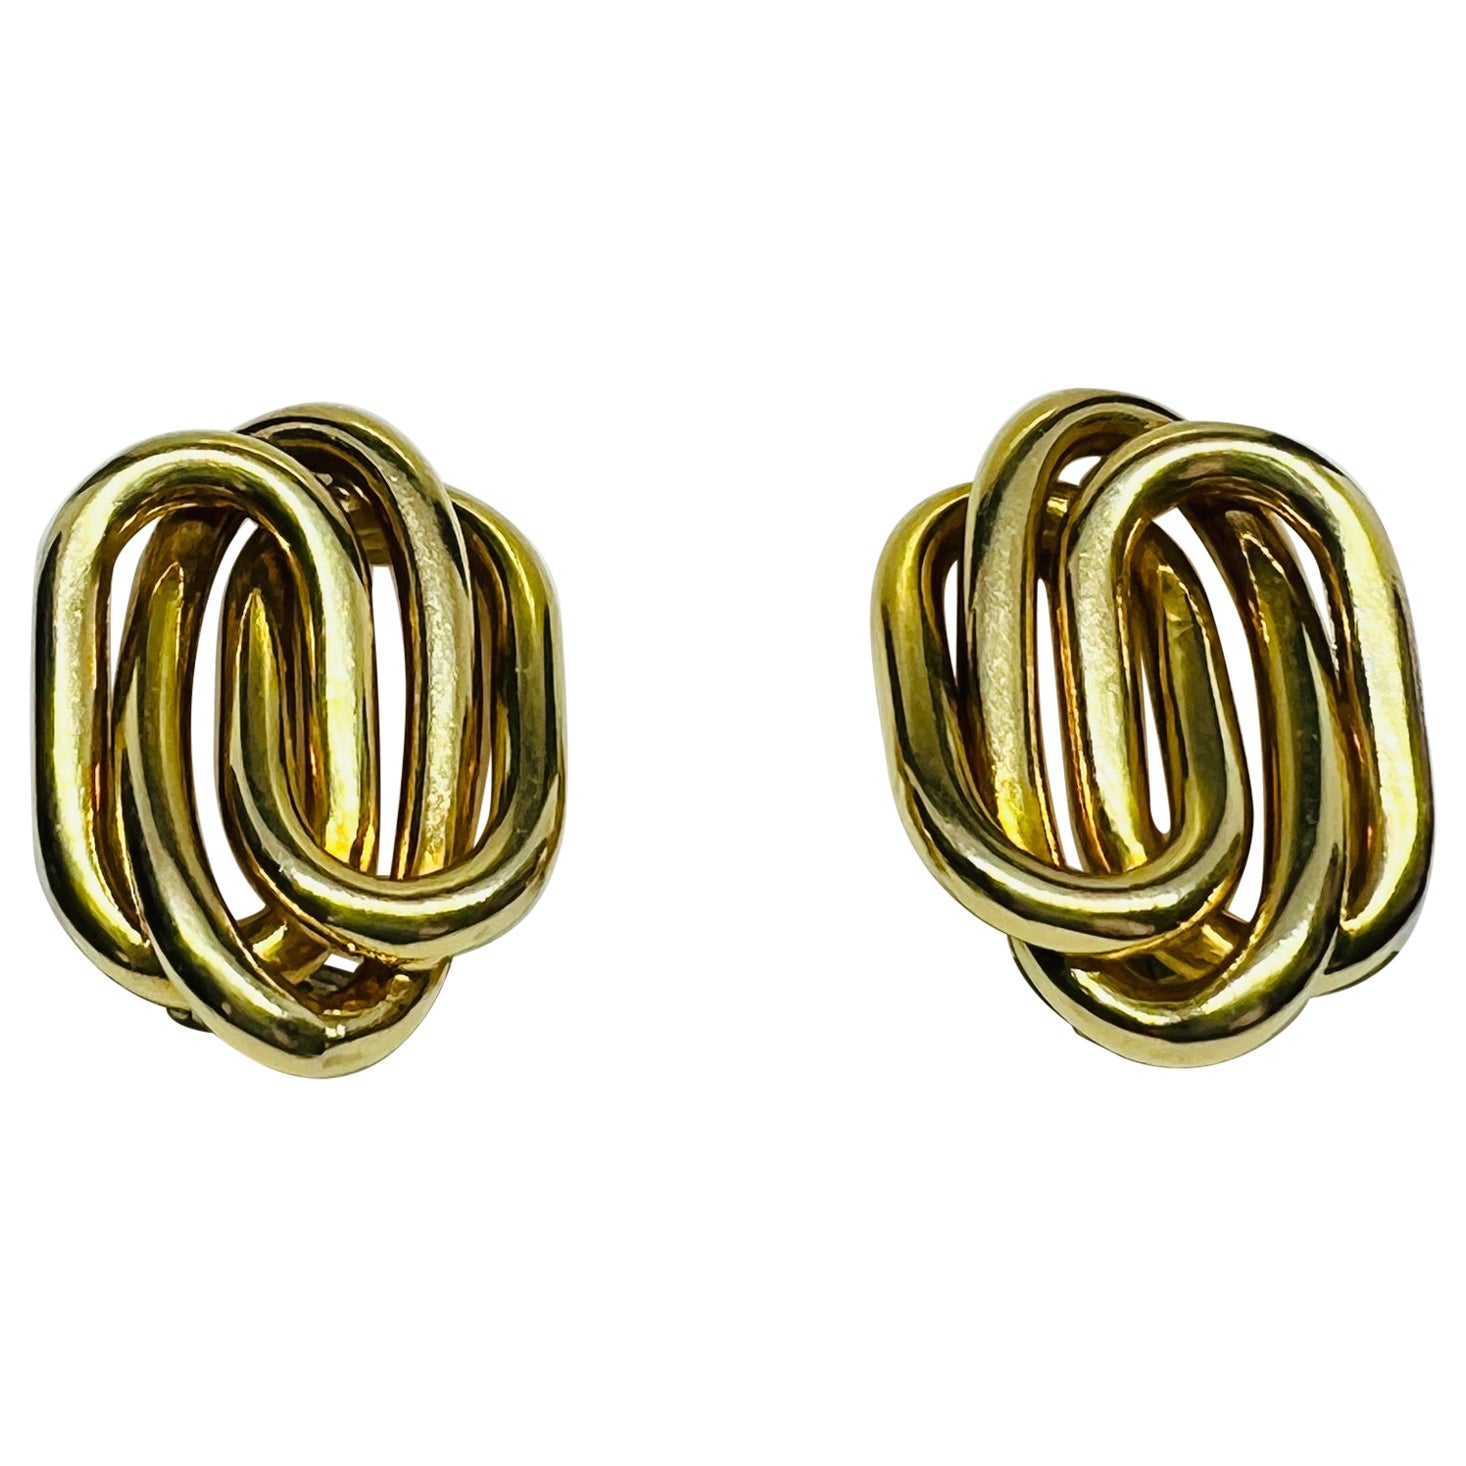 Designer Bvlgari 18K Yellow Gold Mid Century Modern Clip On Earrings 13.5 grams 